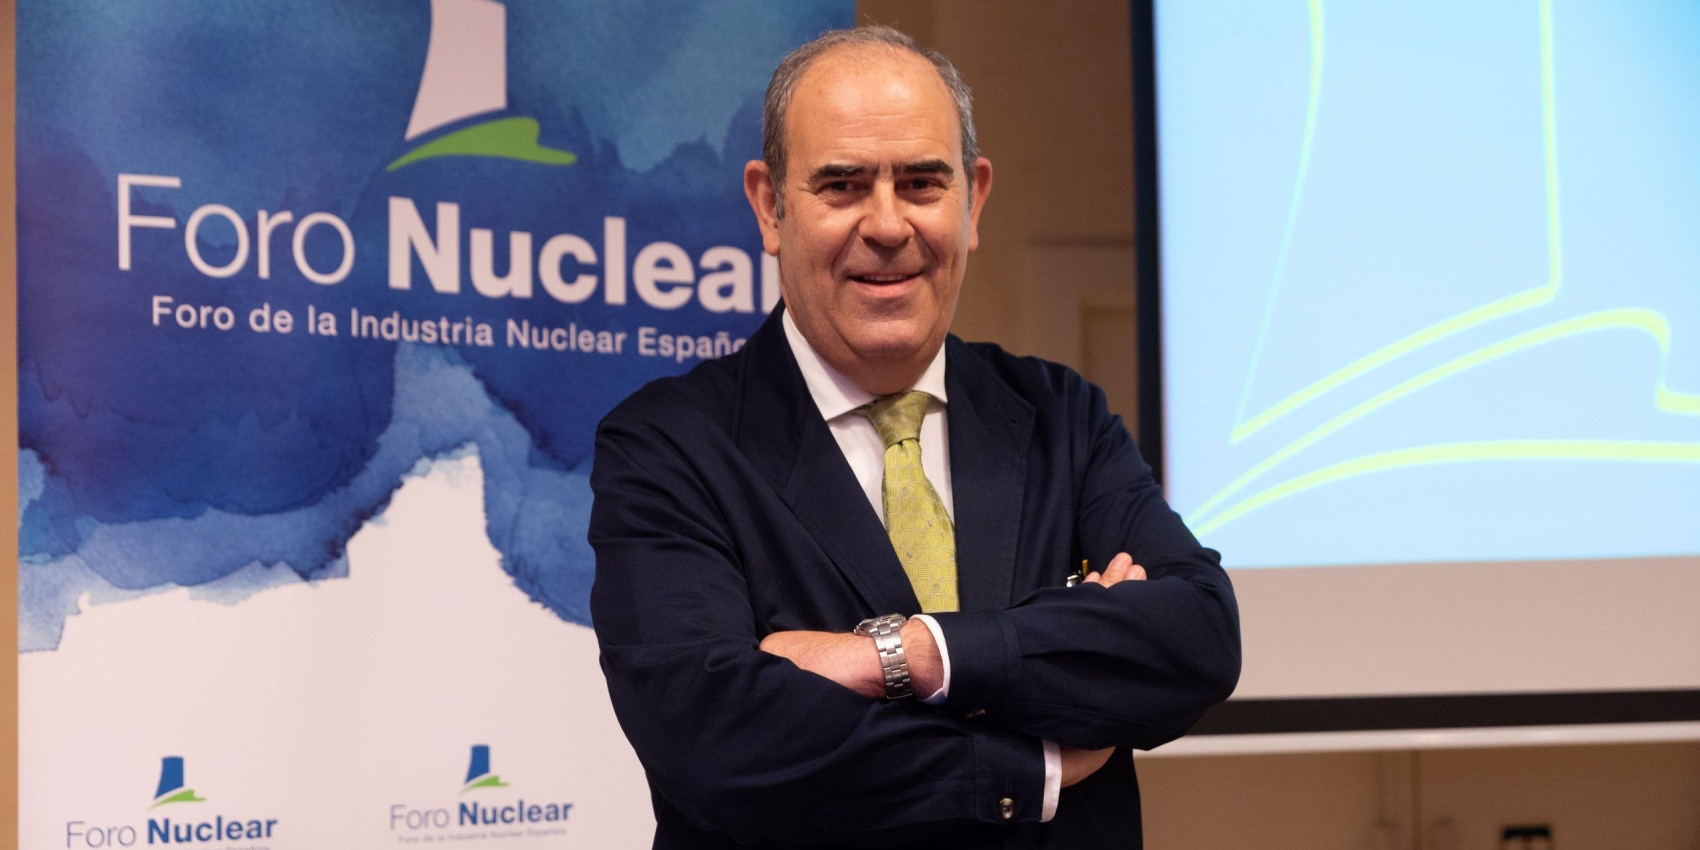 Ignacio Araluce, Leiter des spanischen Kernkraftwerksverbandes Foro Nuclear